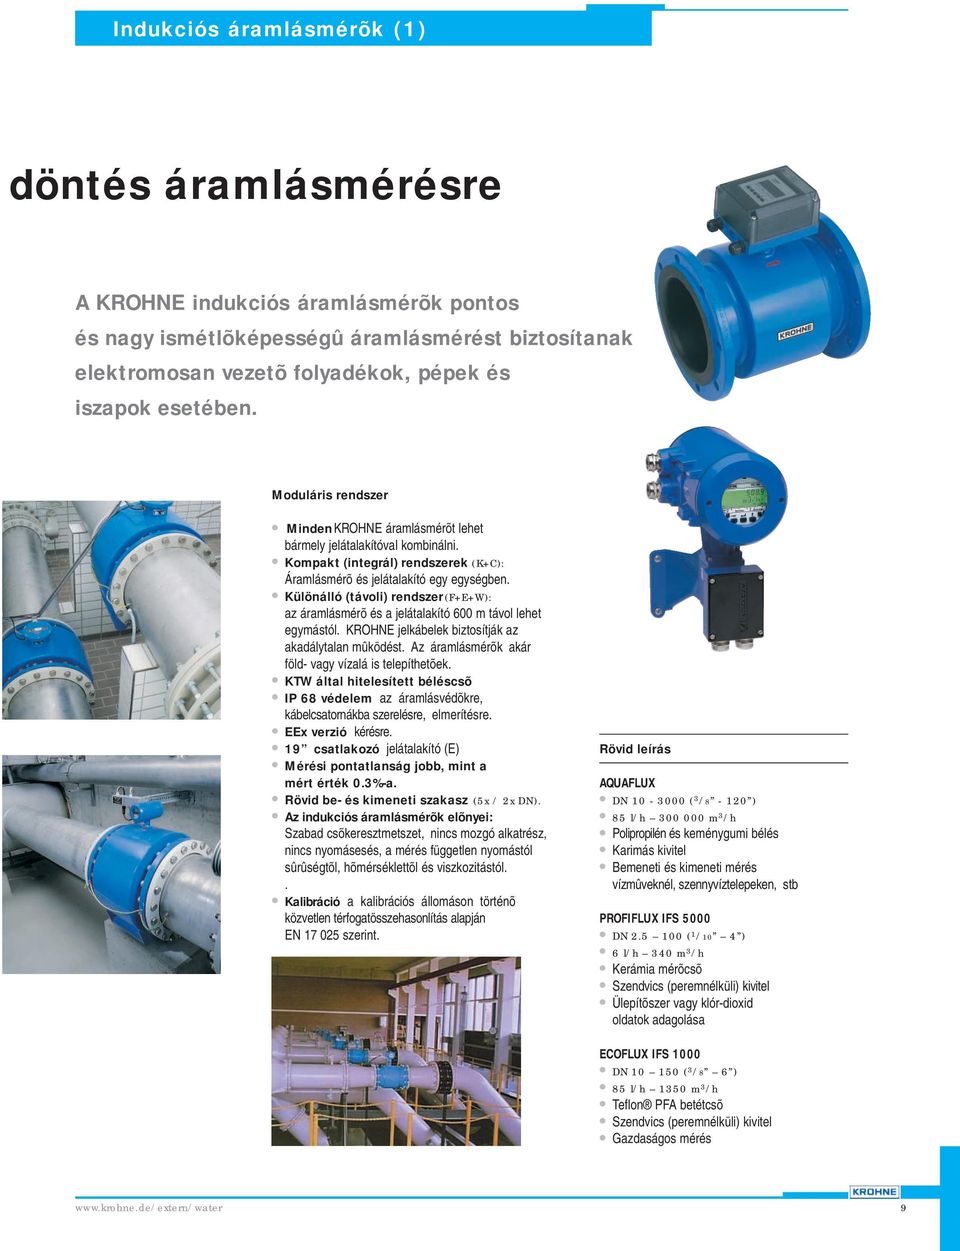 Mérõmûszerek víz- és szennyvízkezeléshez - PDF Ingyenes letöltés